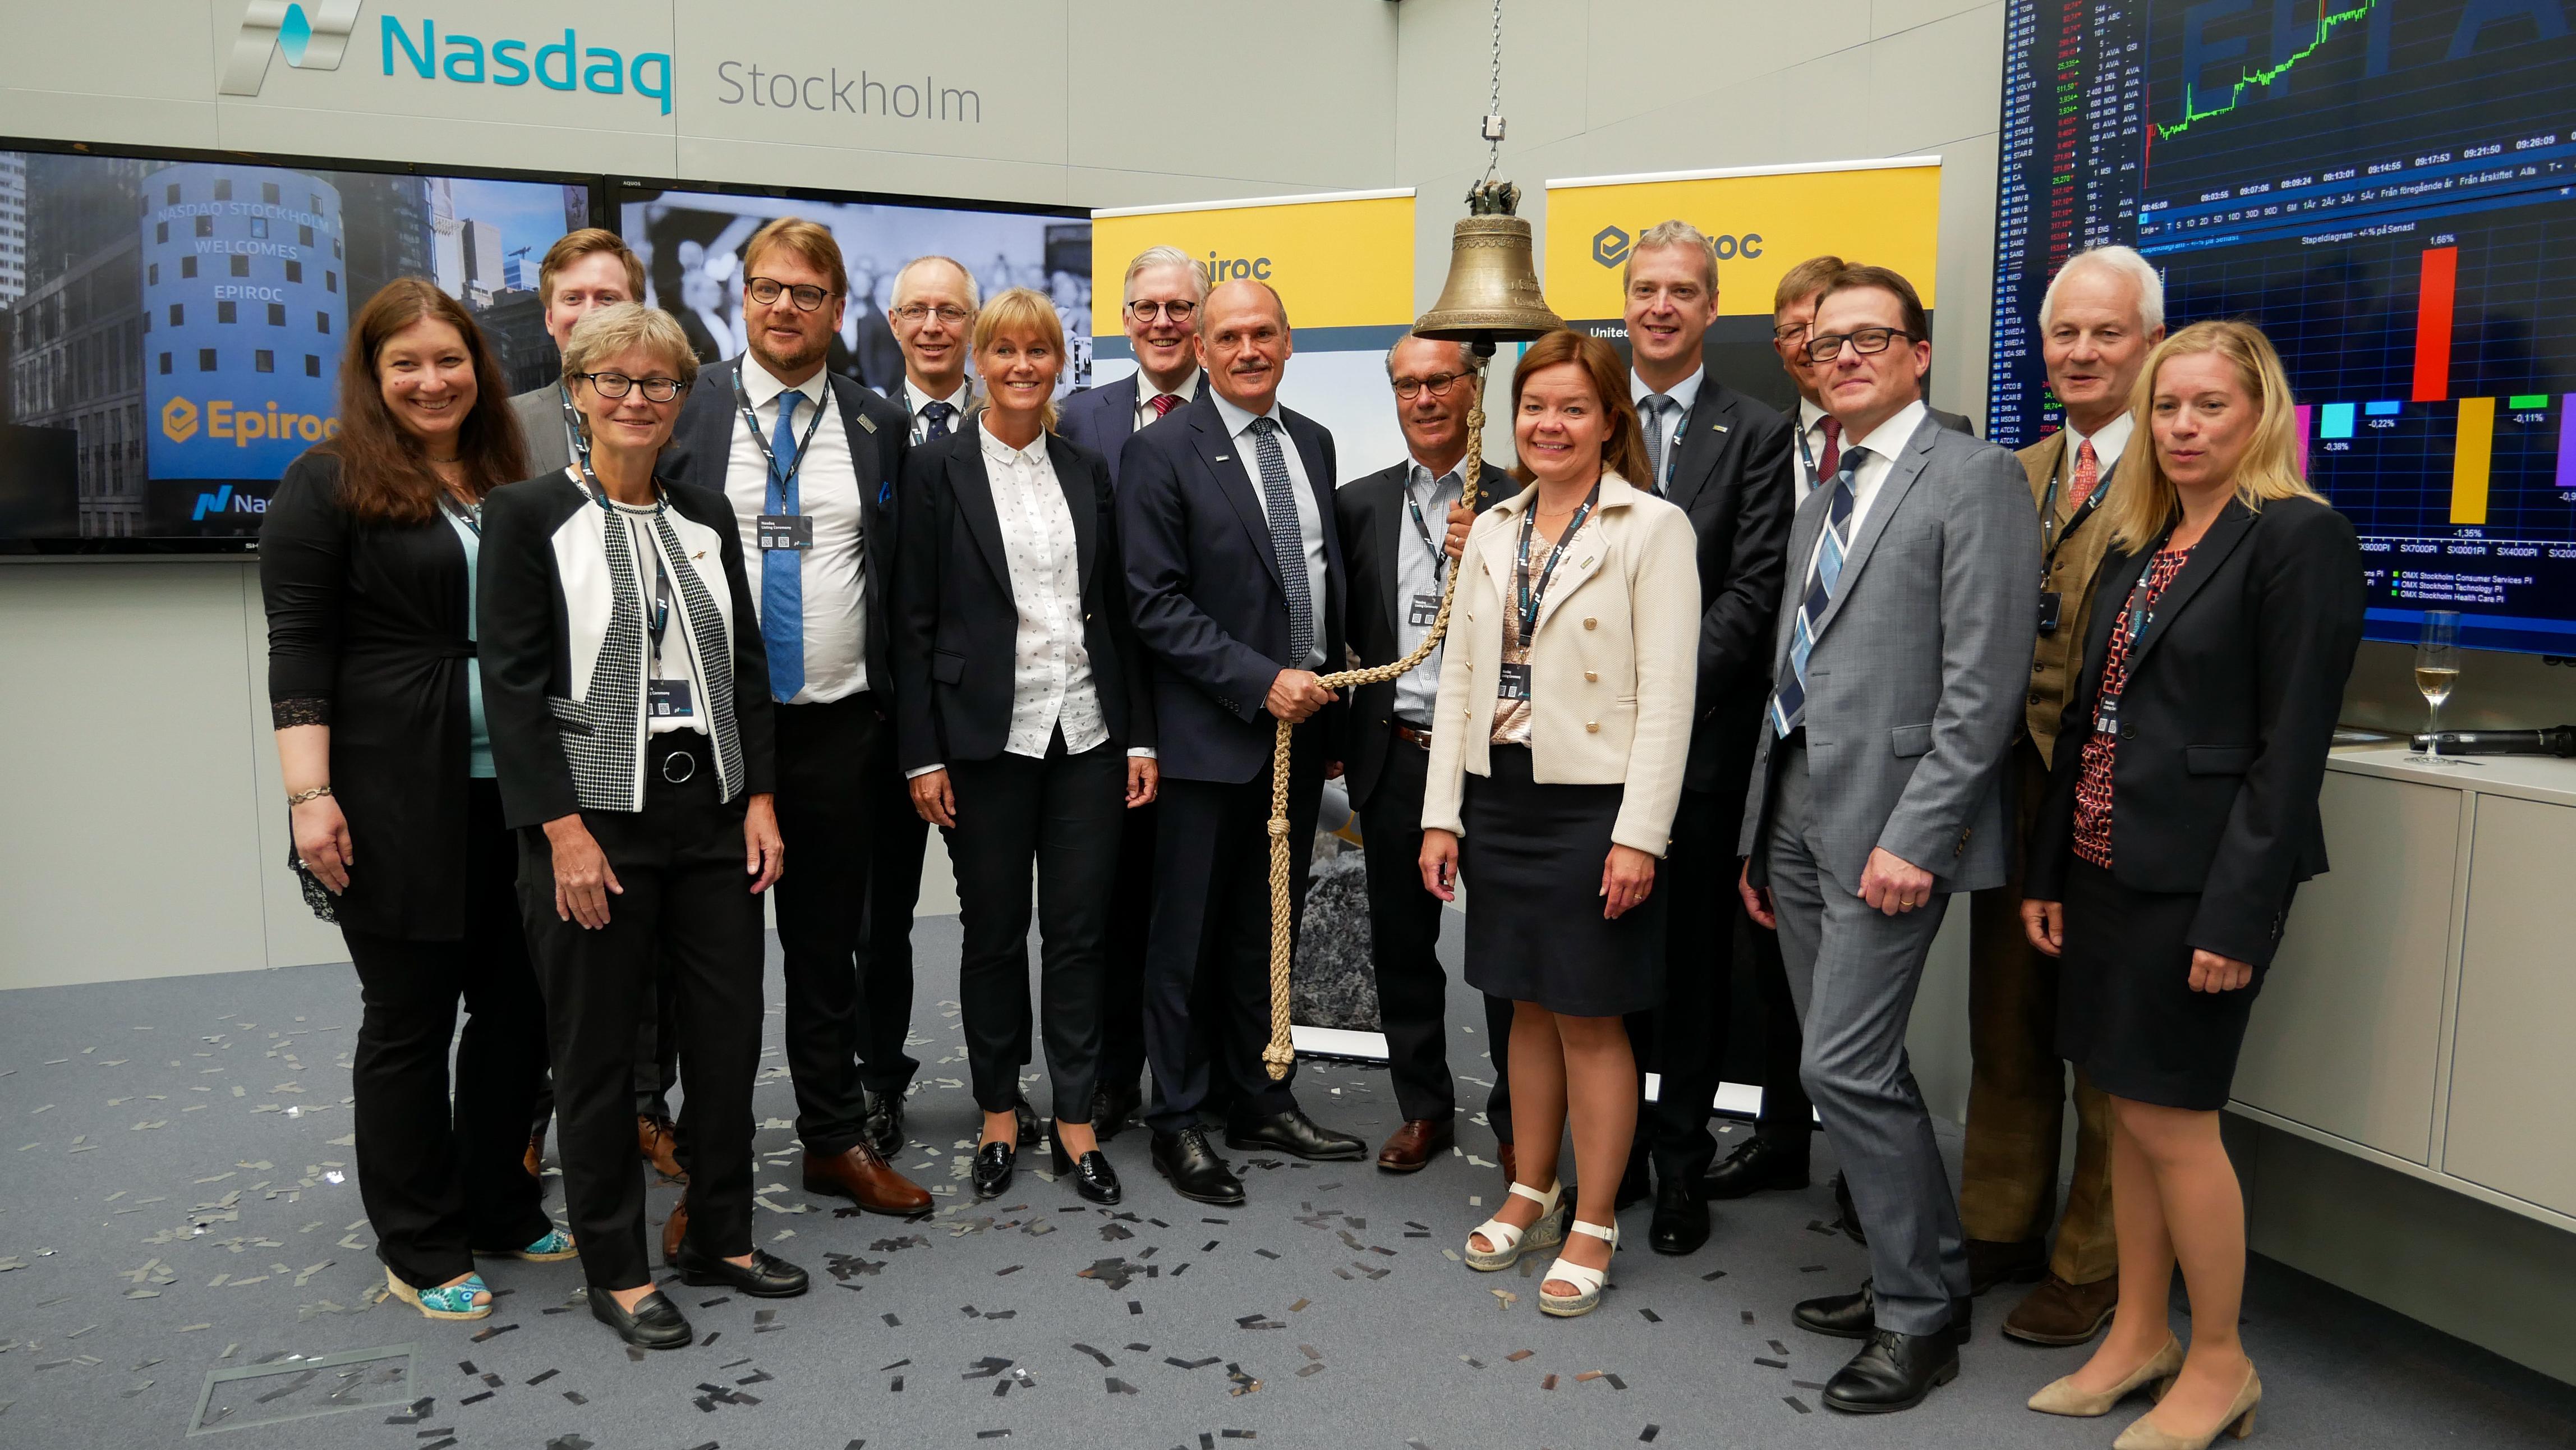 Las acciones de Epiroc AB, socio líder de productividad en las industrias de minería, infraestructura y recursos naturales, se lanzan hoy al mercado bursátil de Nasdaq Estocolmo.